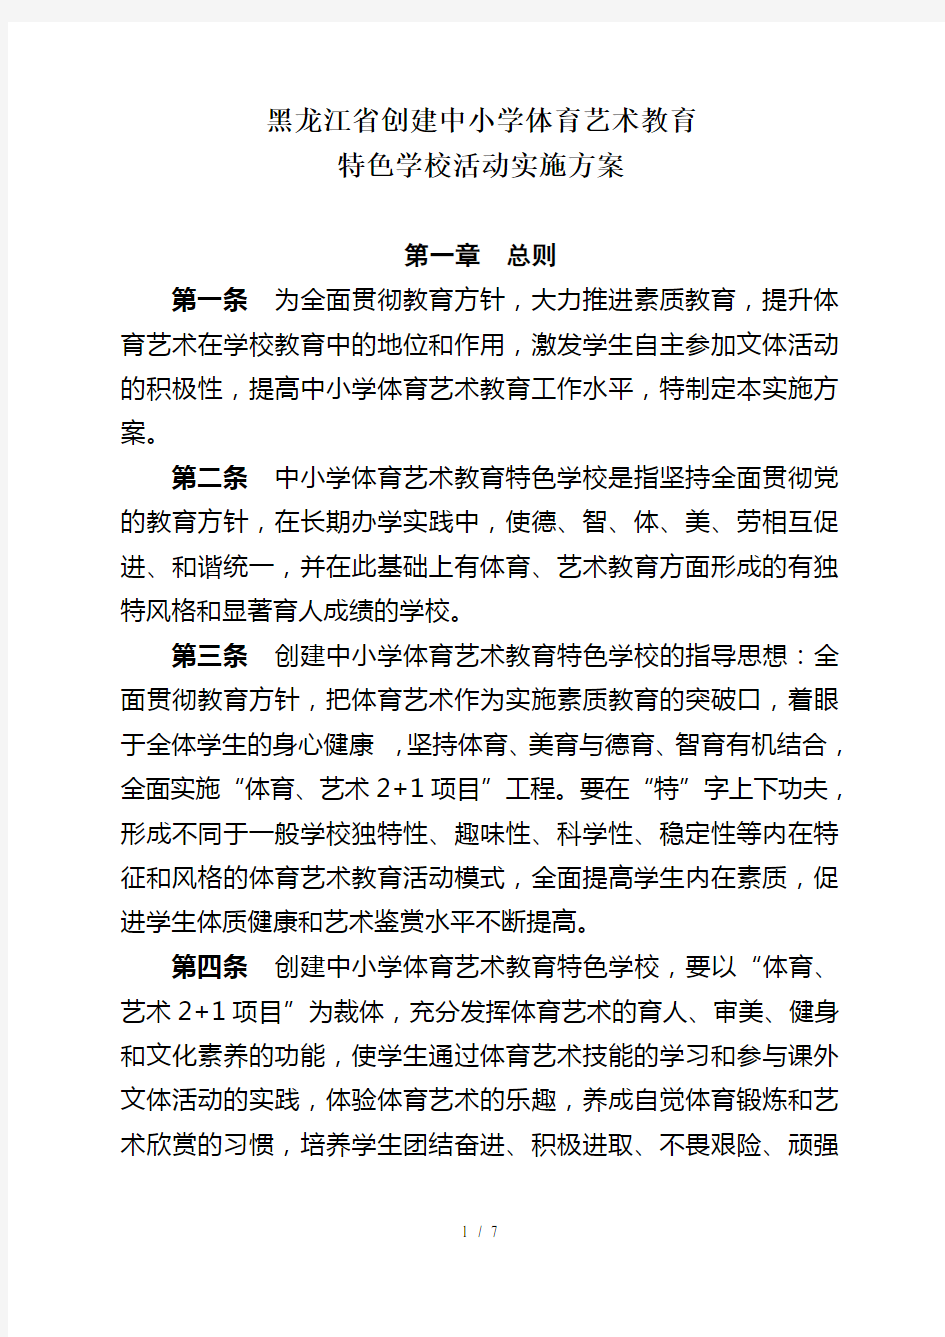 黑龙江省创建中小学体育艺术教育特色学校活动方案